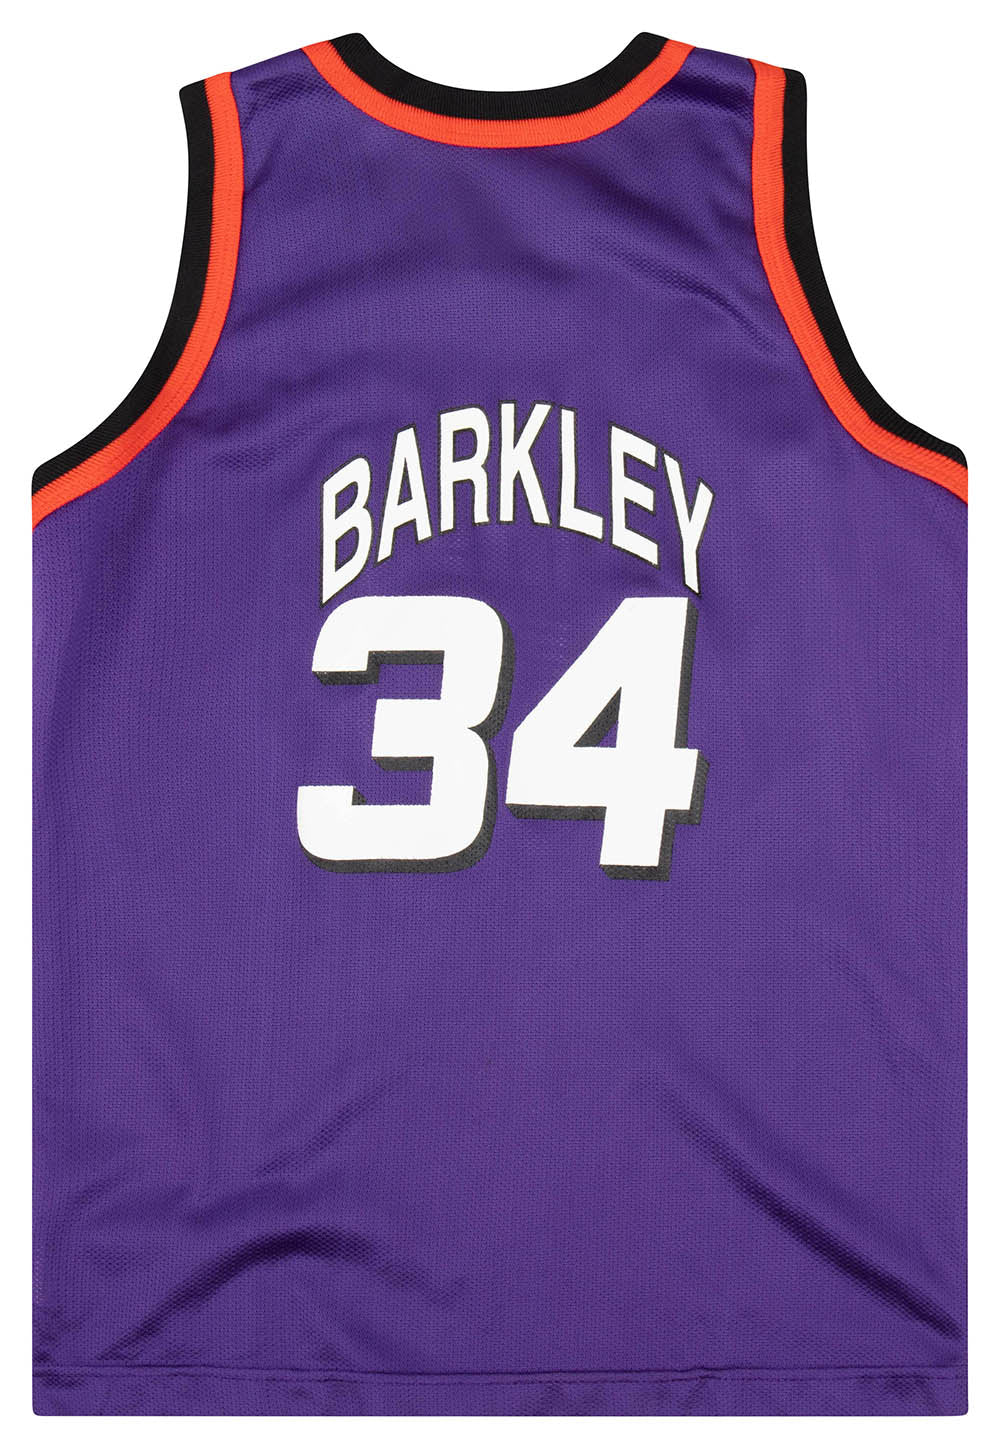 Champion Jersey Phoenix Suns Size M NBA Charles Barkley 34 